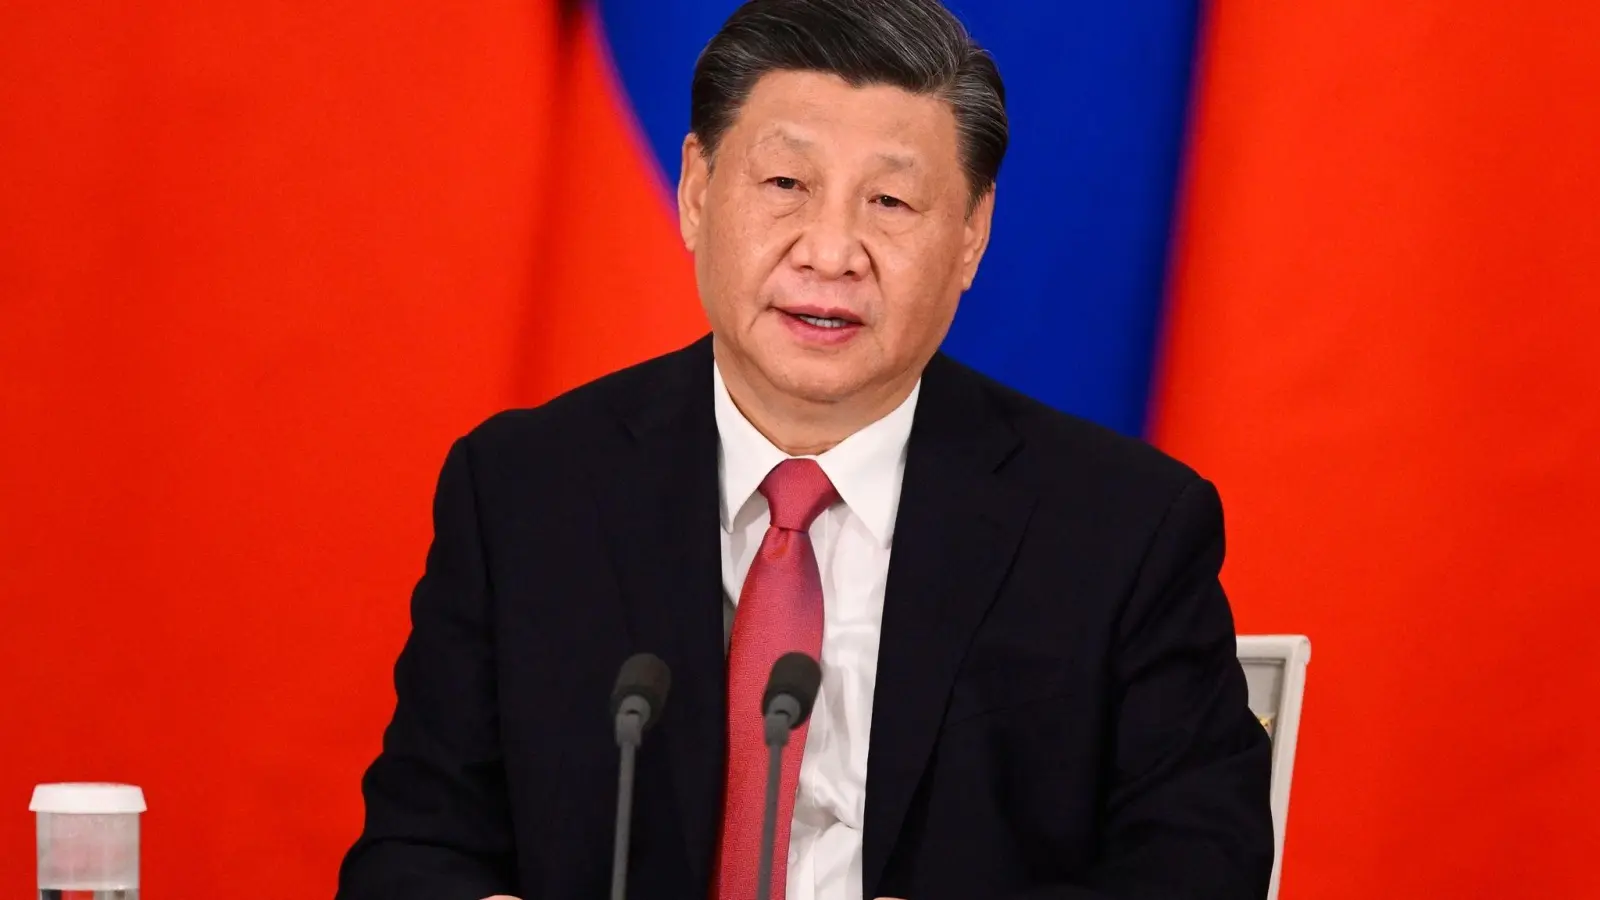 Chinas Präsident Xi Jinping hat an wirtschaftliche Beziehungen mit Honduras Forderungen geknüpft. (Foto: Vladimir Astapkovich/Sputnik Kremlin Pool via AP/dpa)